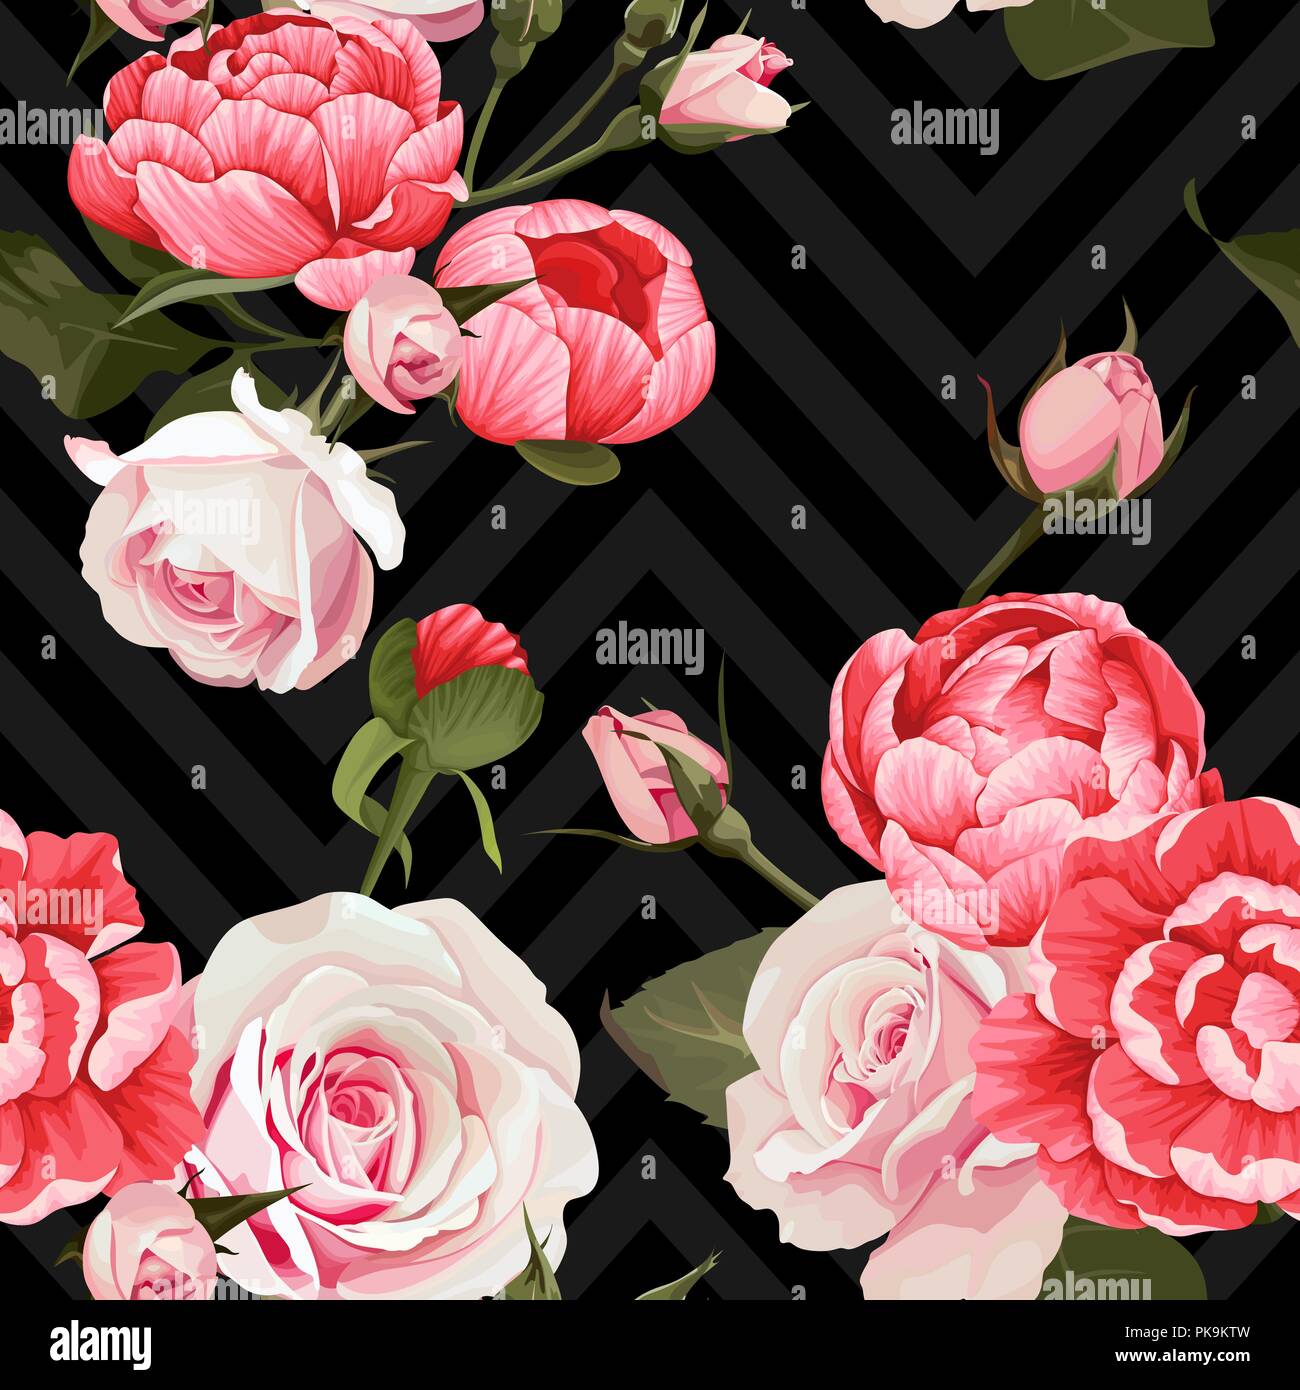 Pfingstrose und Rosen Vektor nahtlose Muster floral Textur auf einem dunklen Chevron Hintergrund Stock Vektor